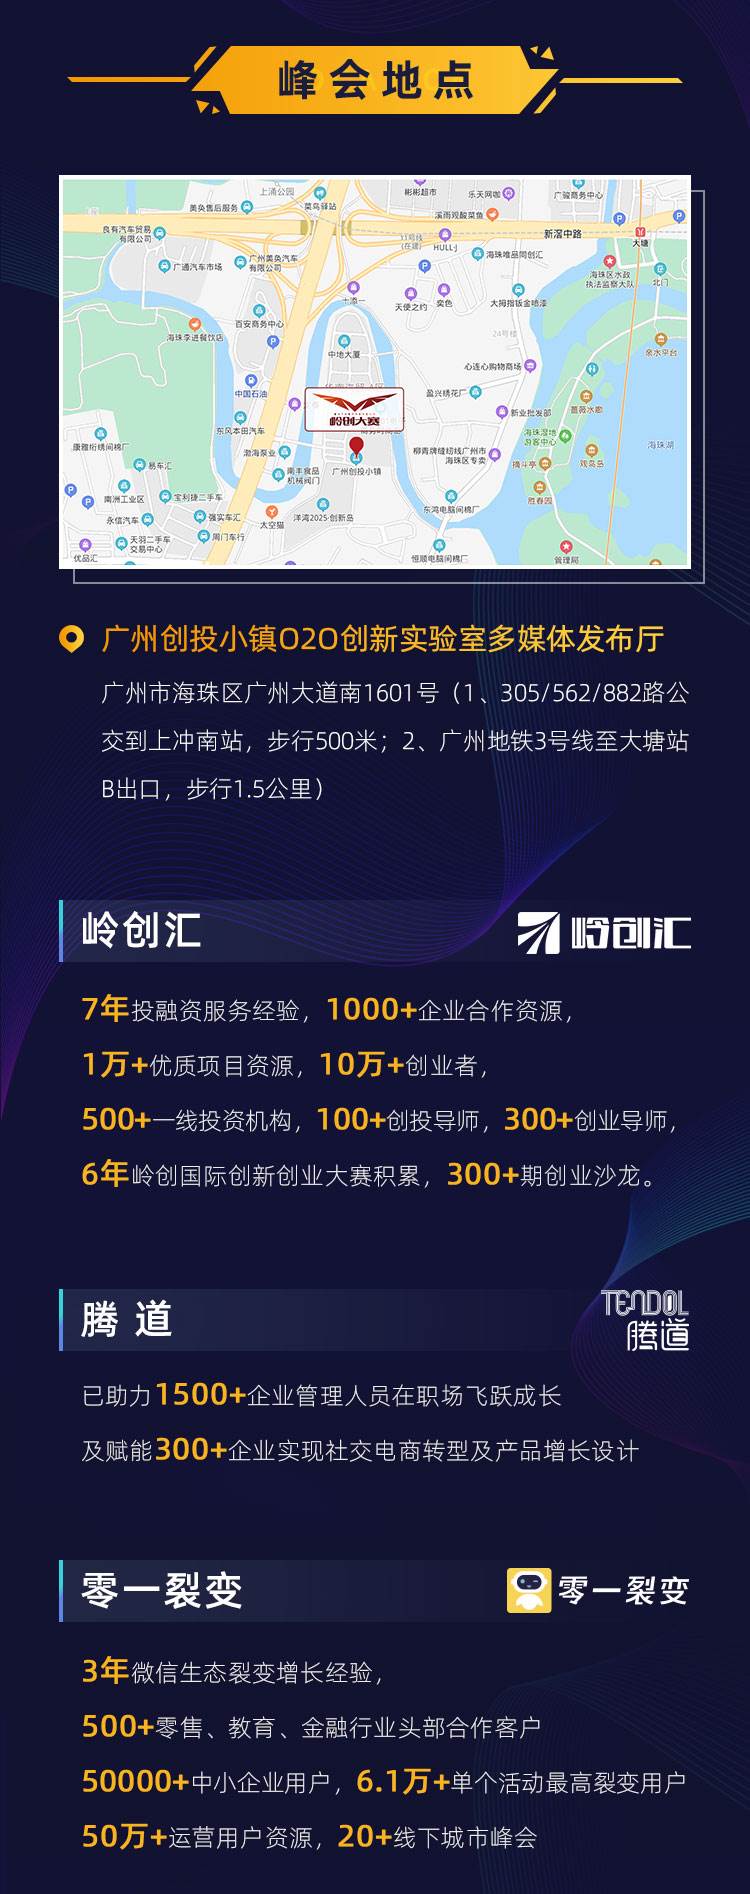 2020中国产业峰会_售票详情v2.1_08.jpg